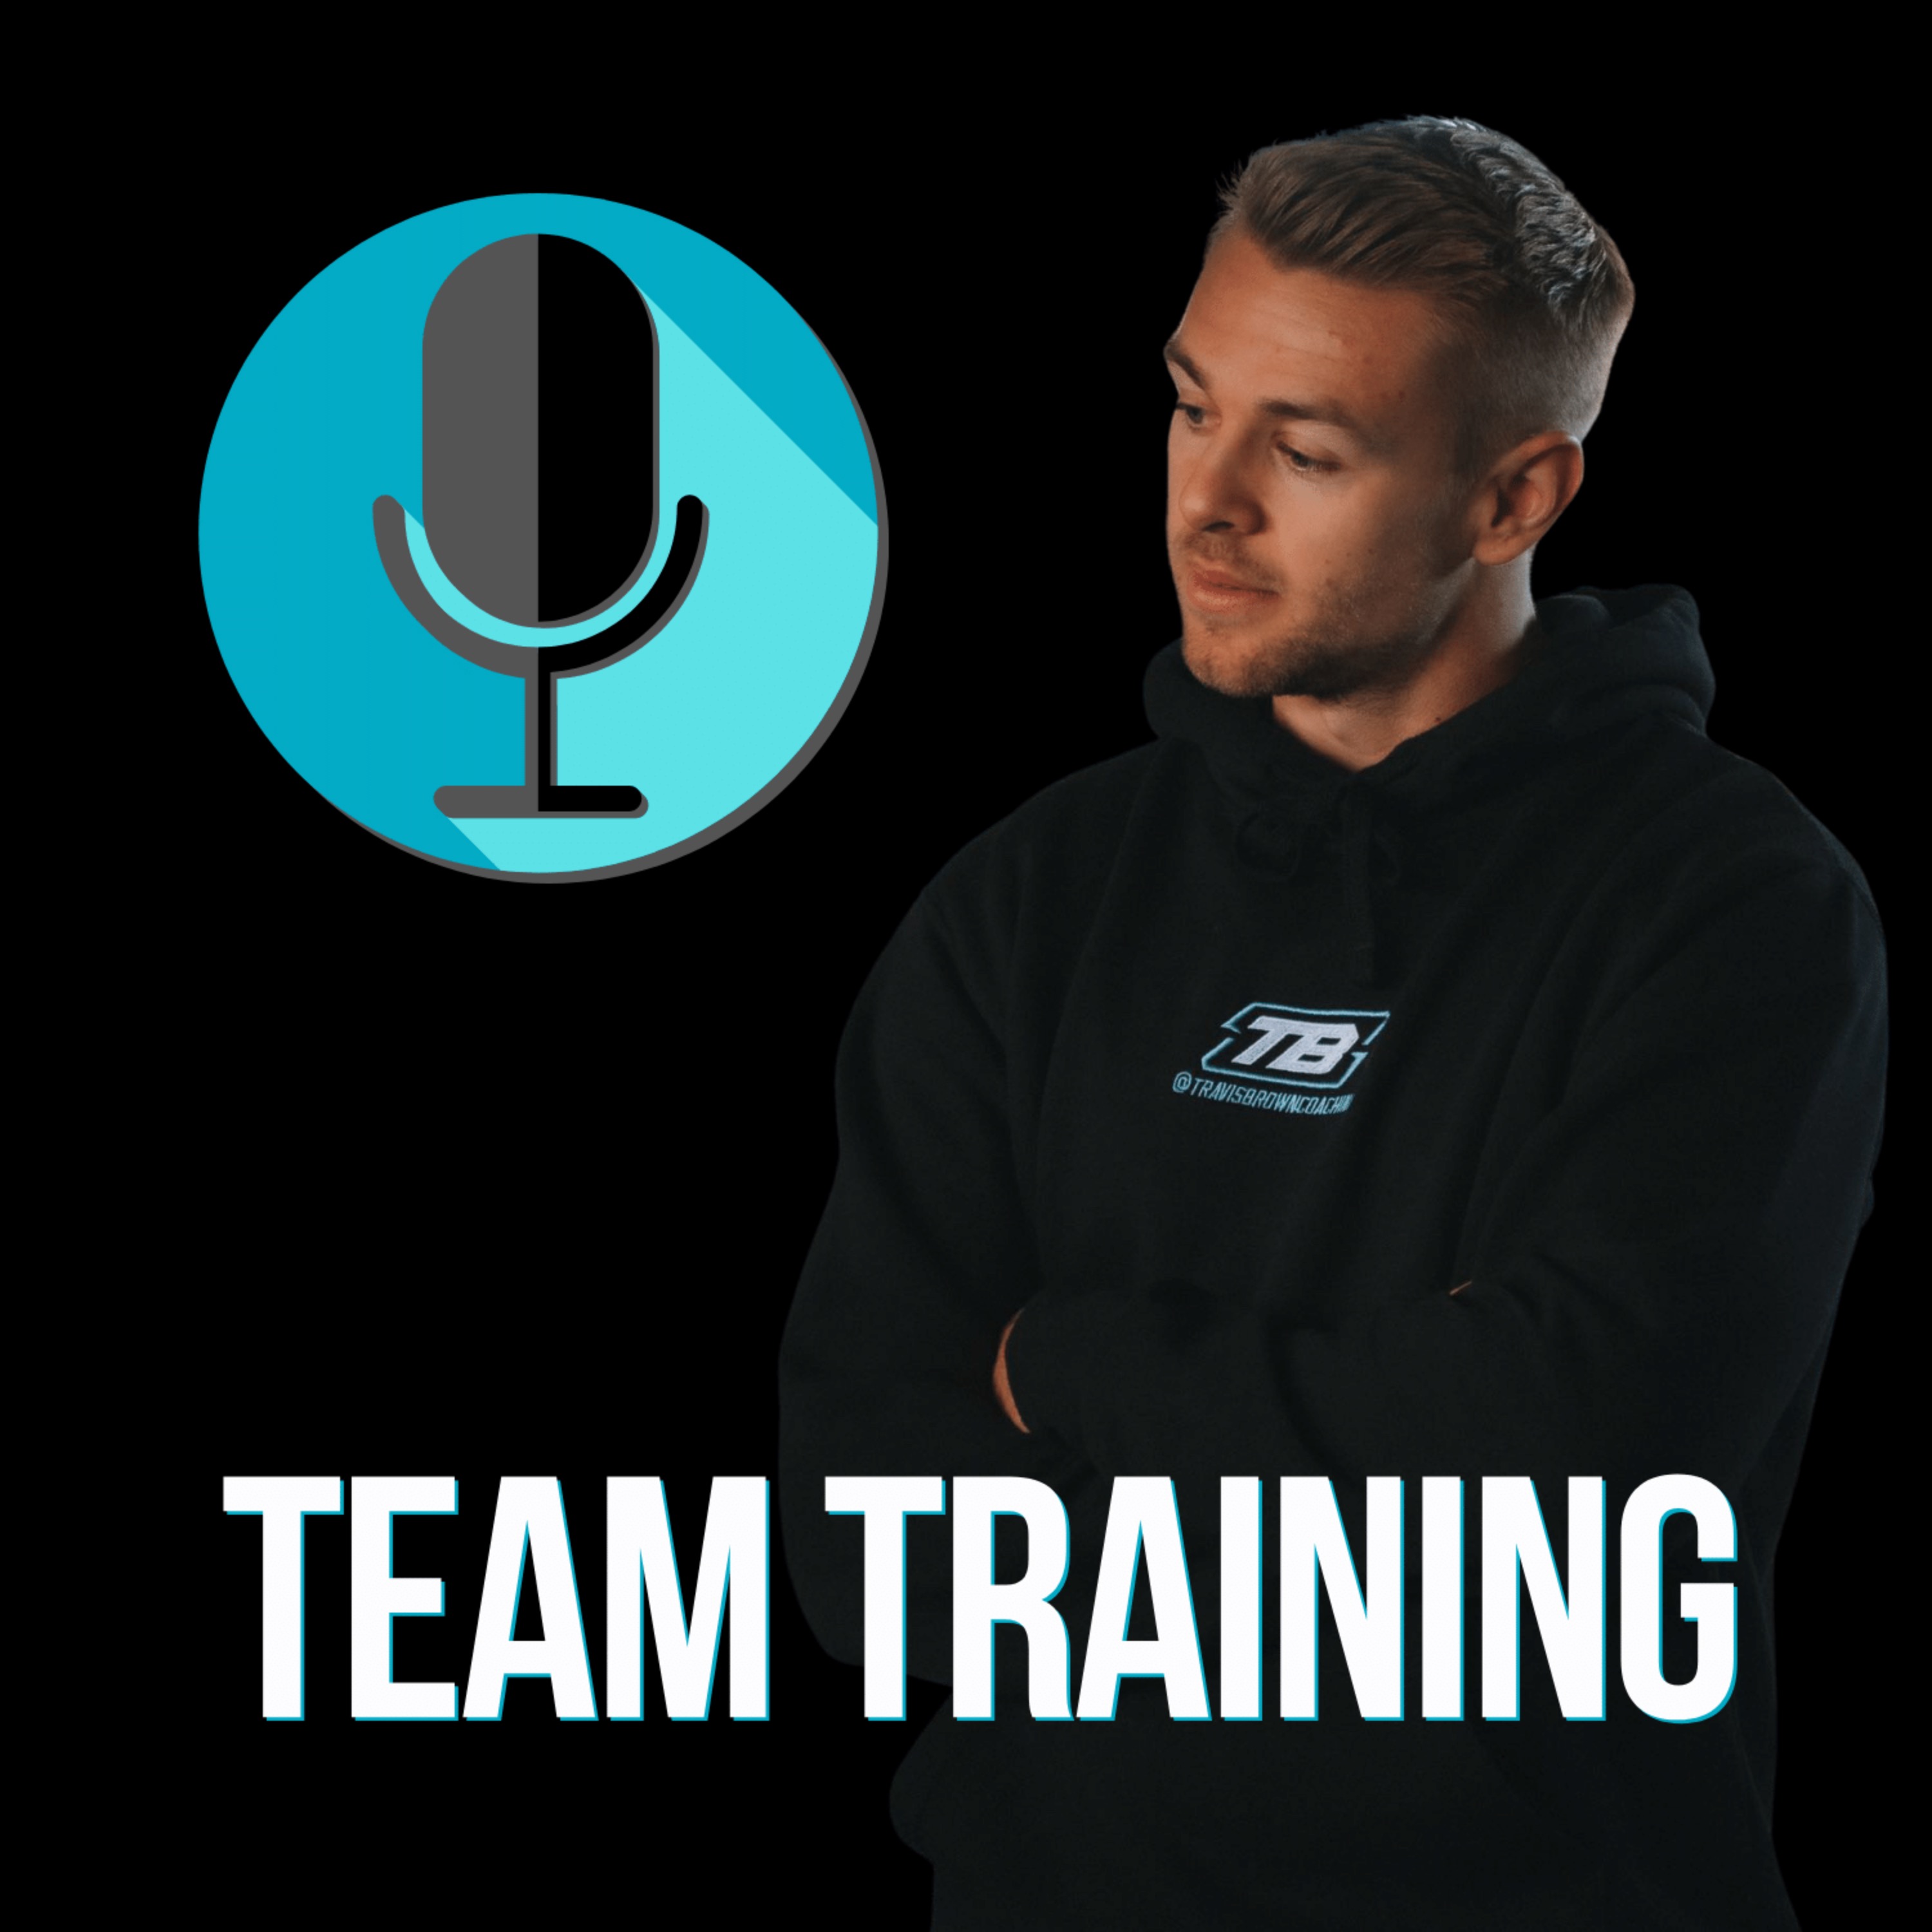 TB Coaching - Team Training